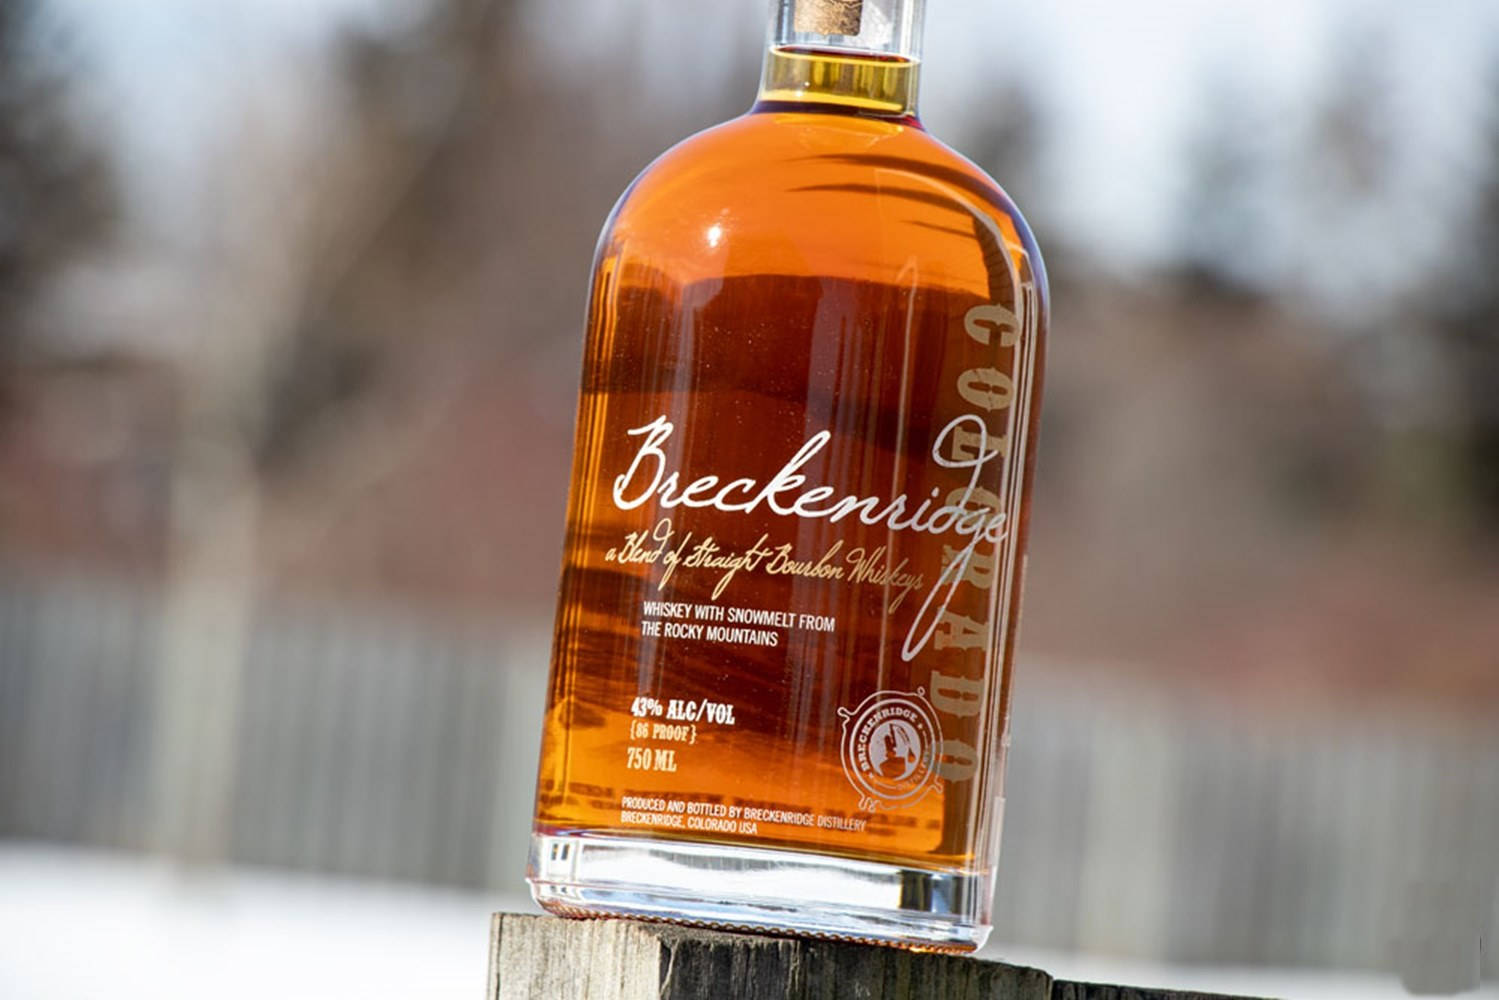 Breckenridgedistillery Blend Aus Straight Bourbon Whiskey Wallpaper